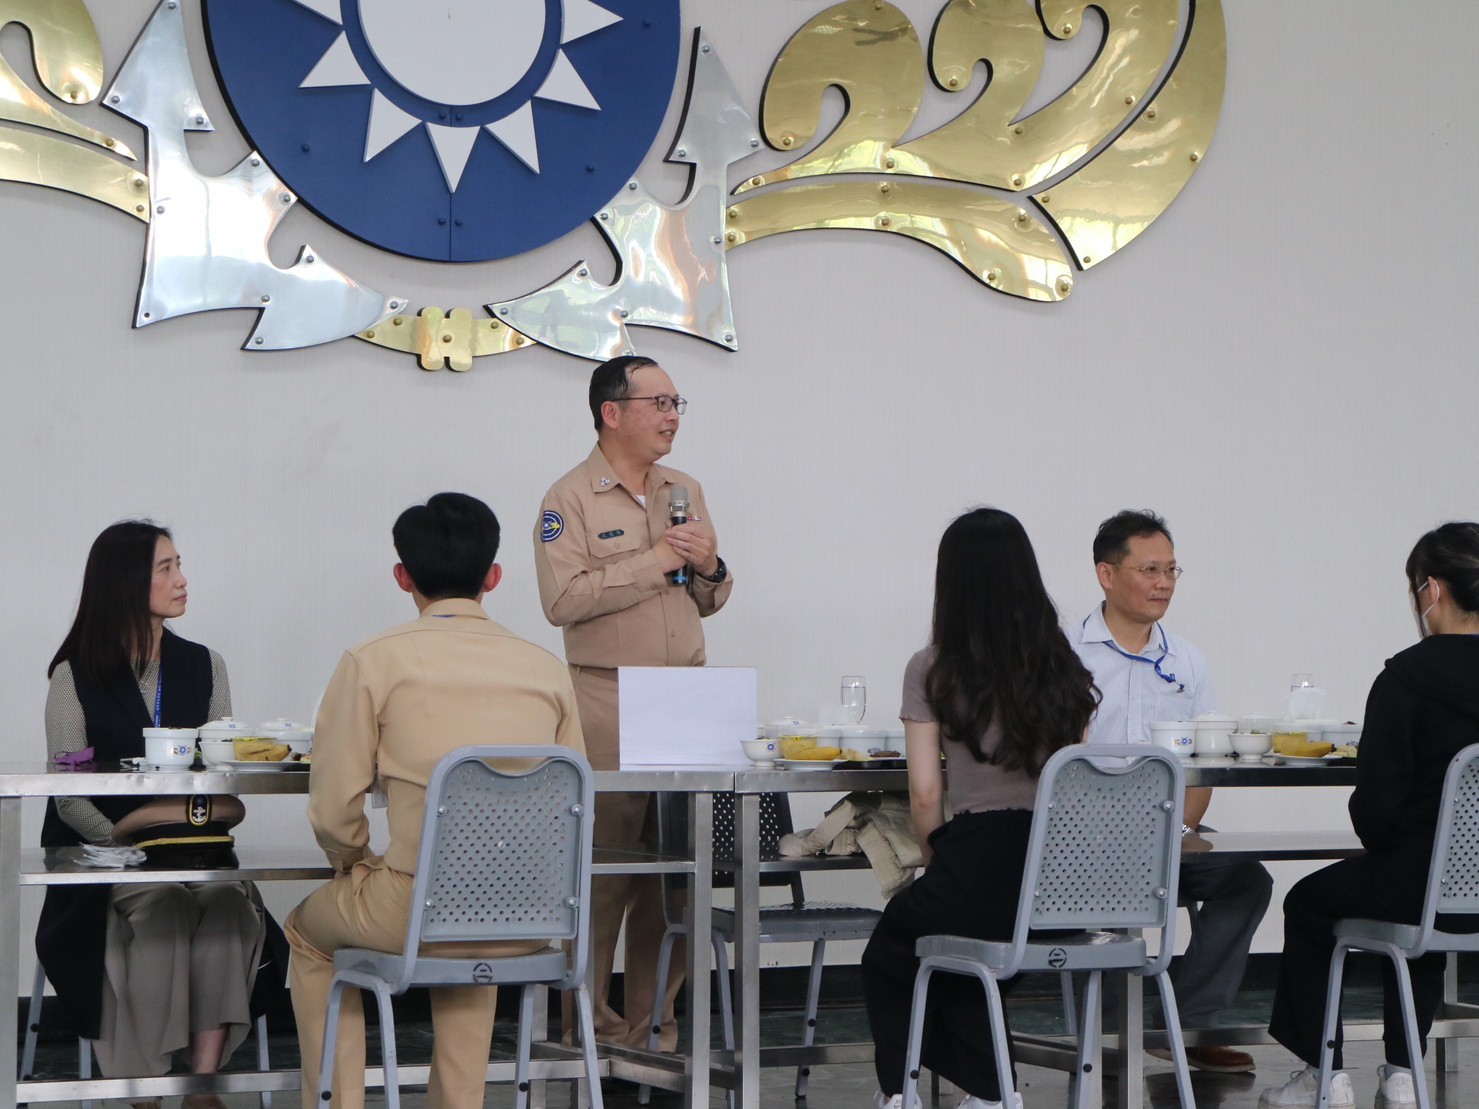 總隊長王俊傑上校(中央站立者)於用餐前致詞。.jpg